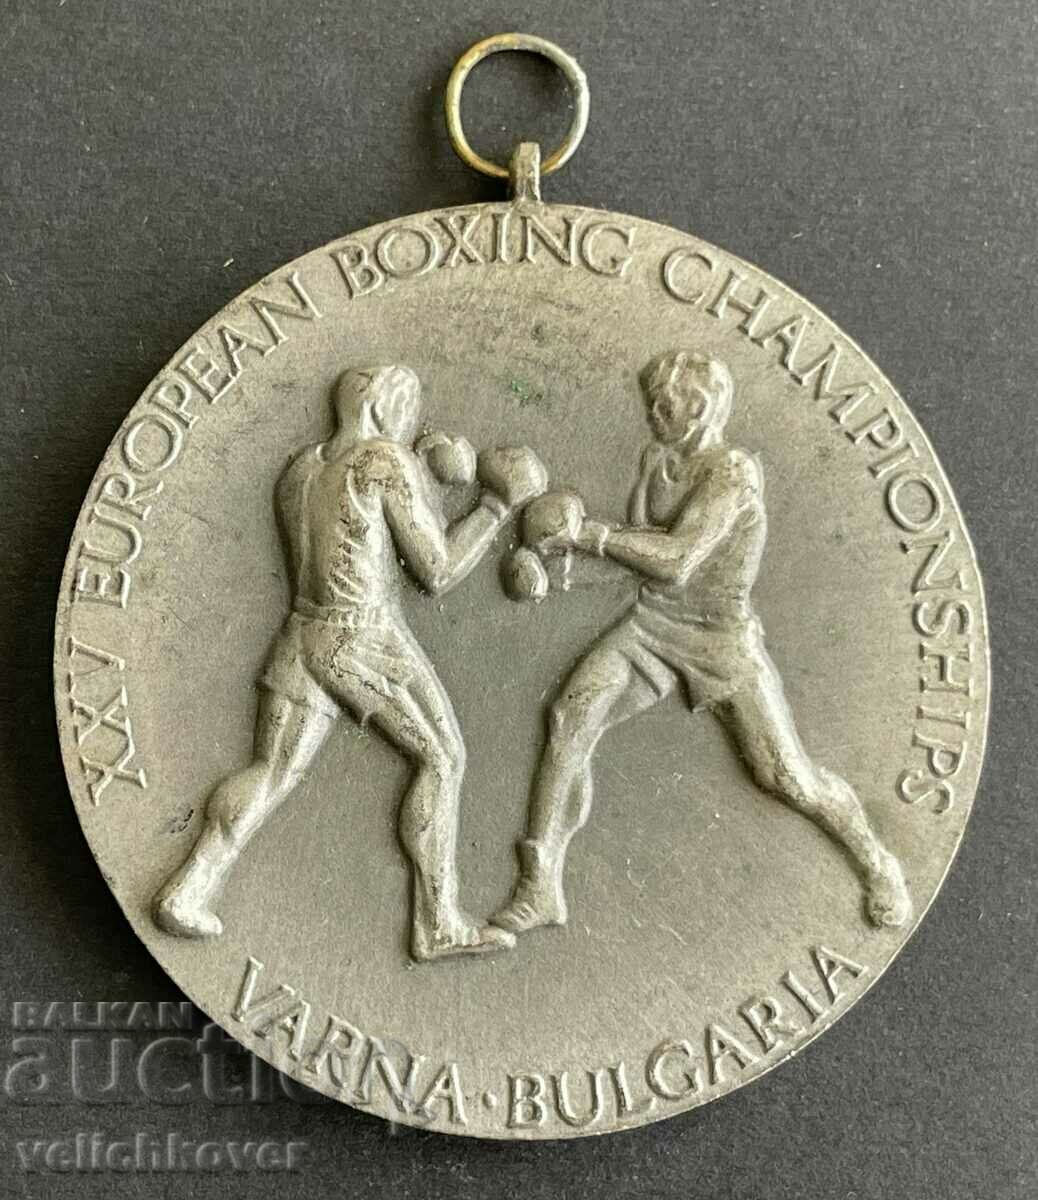 35352 Βουλγαρία Μετάλλιο Sreberin 25 Ευρωπαϊκό Πρωτάθλημα Πυγμαχίας